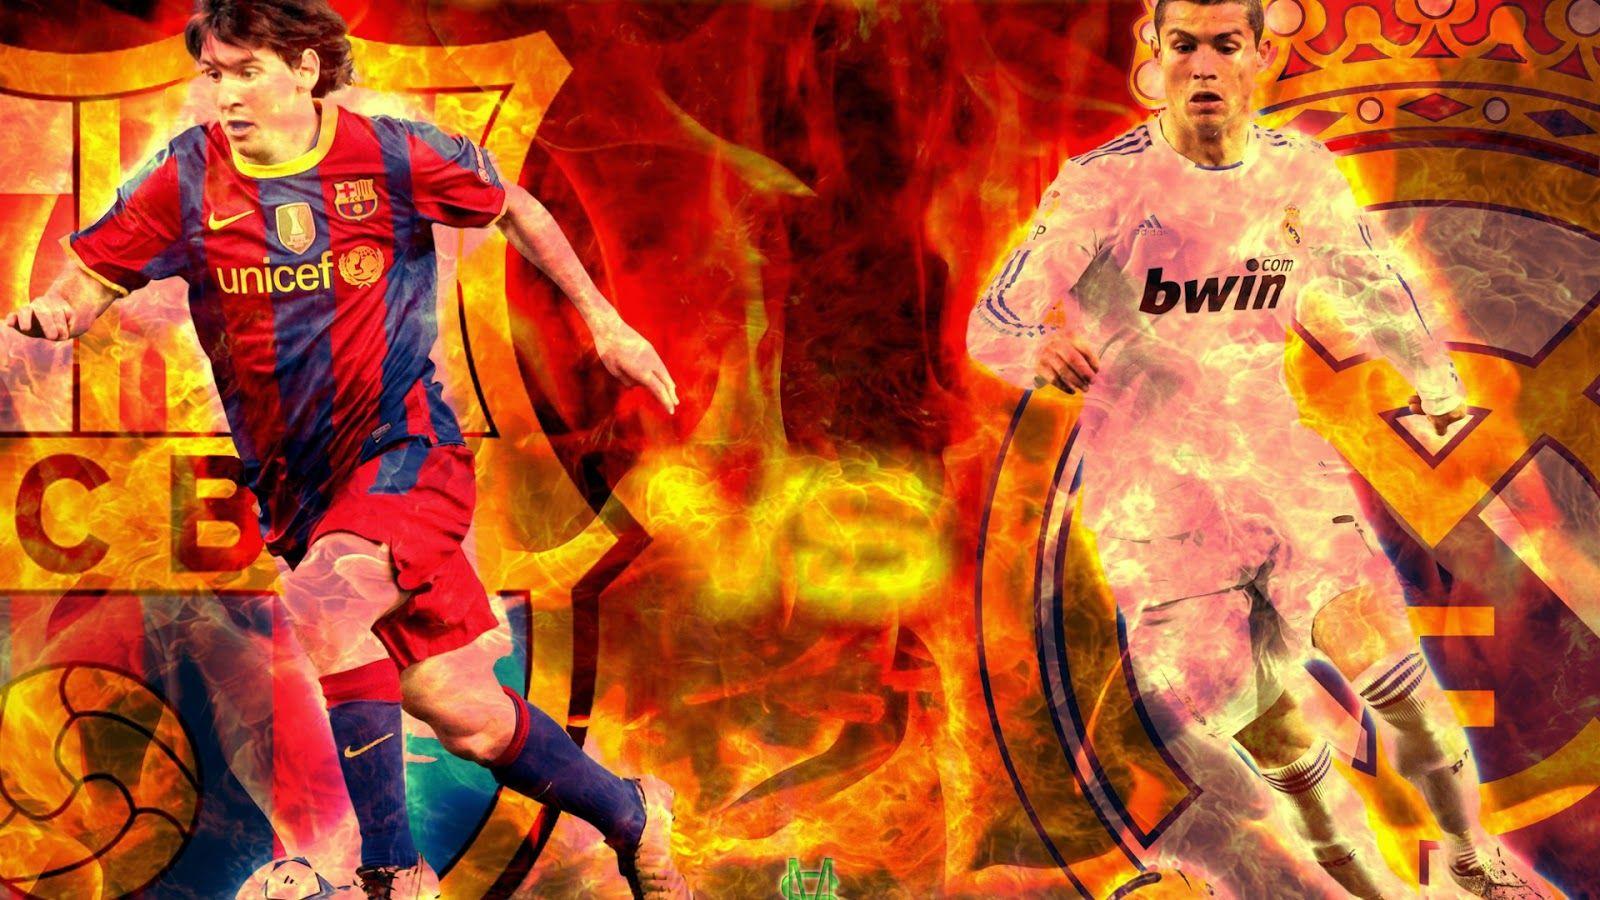 Lionel Messi vs Cristiano Ronaldo. Sports World and celebrity gossip